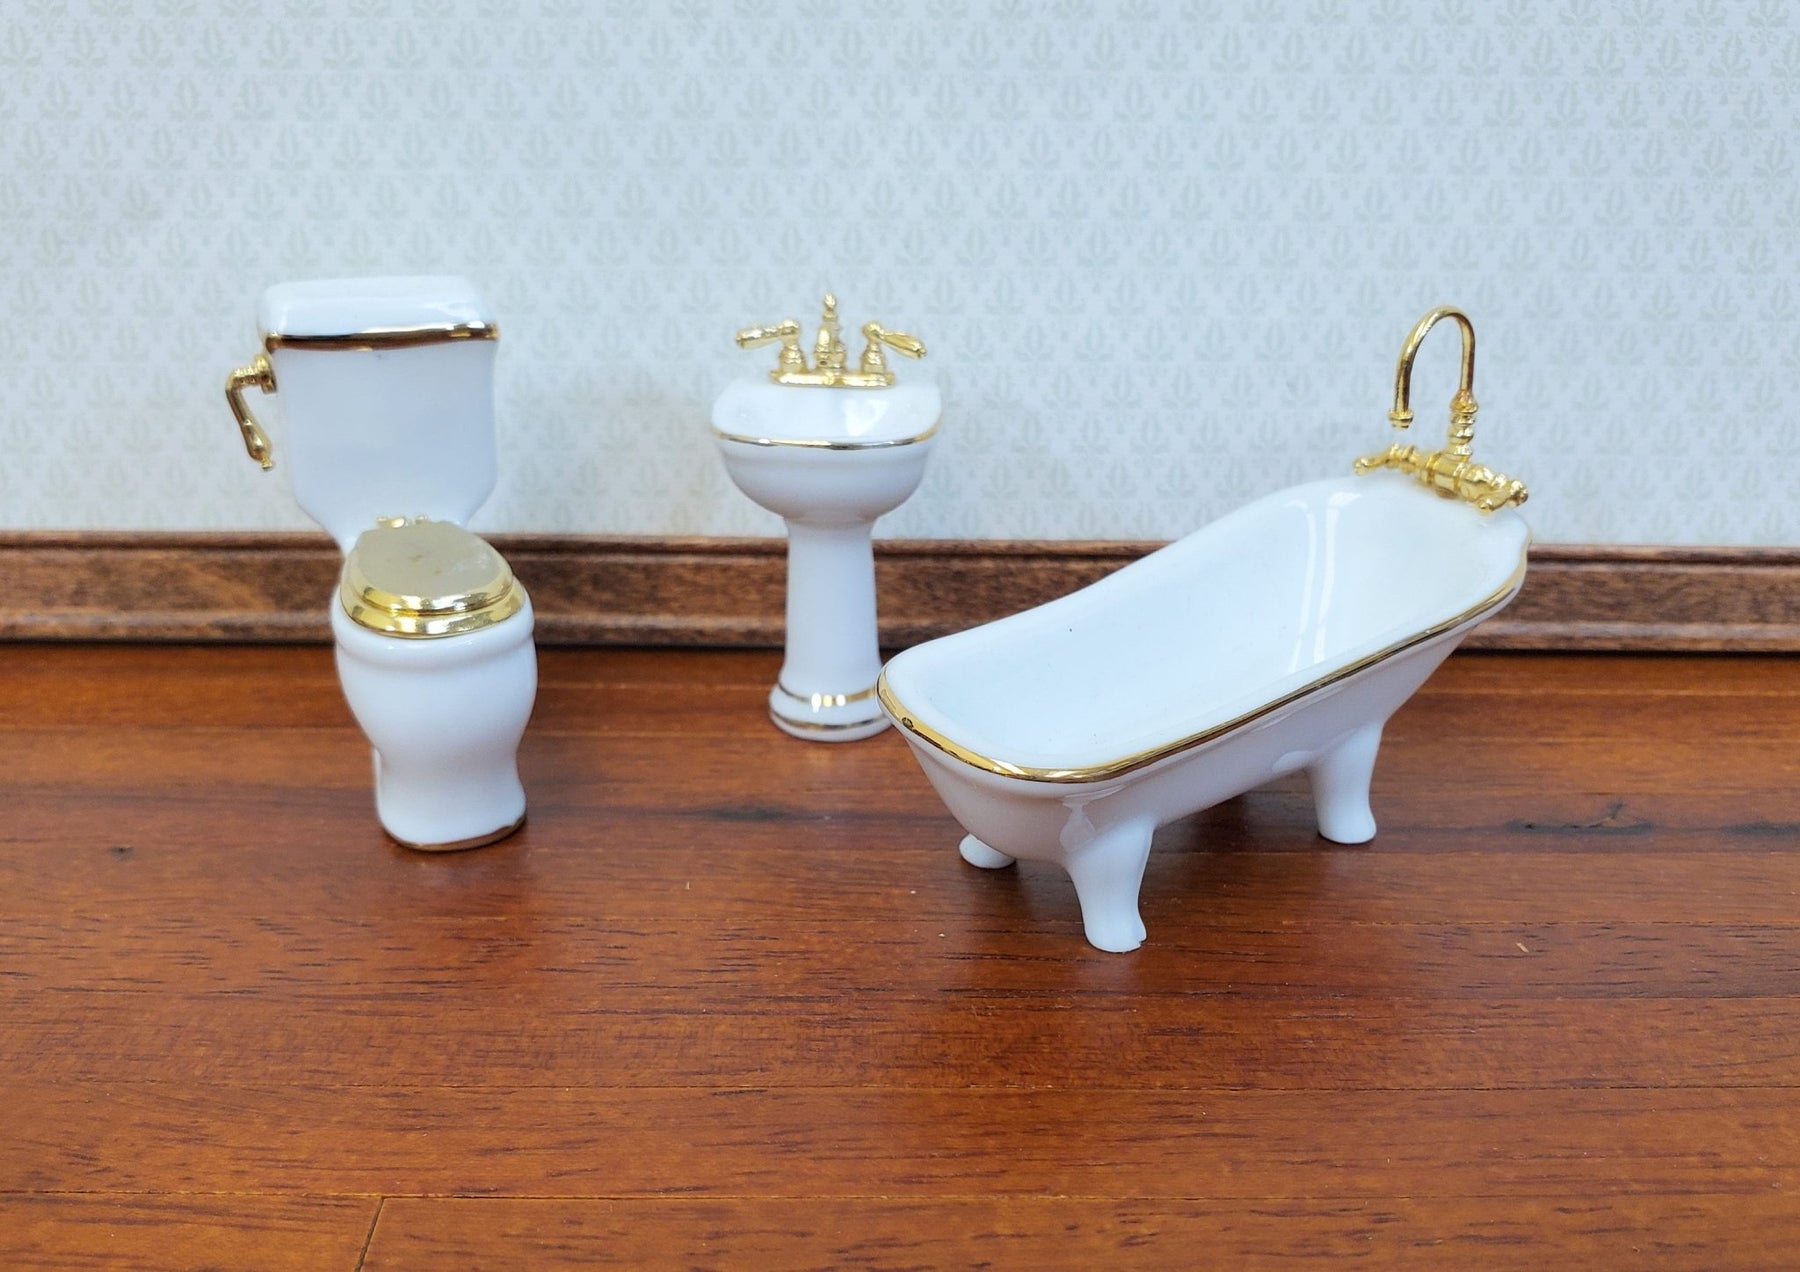 Dollhouse HALF SCALE Bathroom Set Reutter Porcelain Tub Toilet Sink 1:24  Miniatures 24k Gold Accents - Miniature Crush | Schmuck-Sets